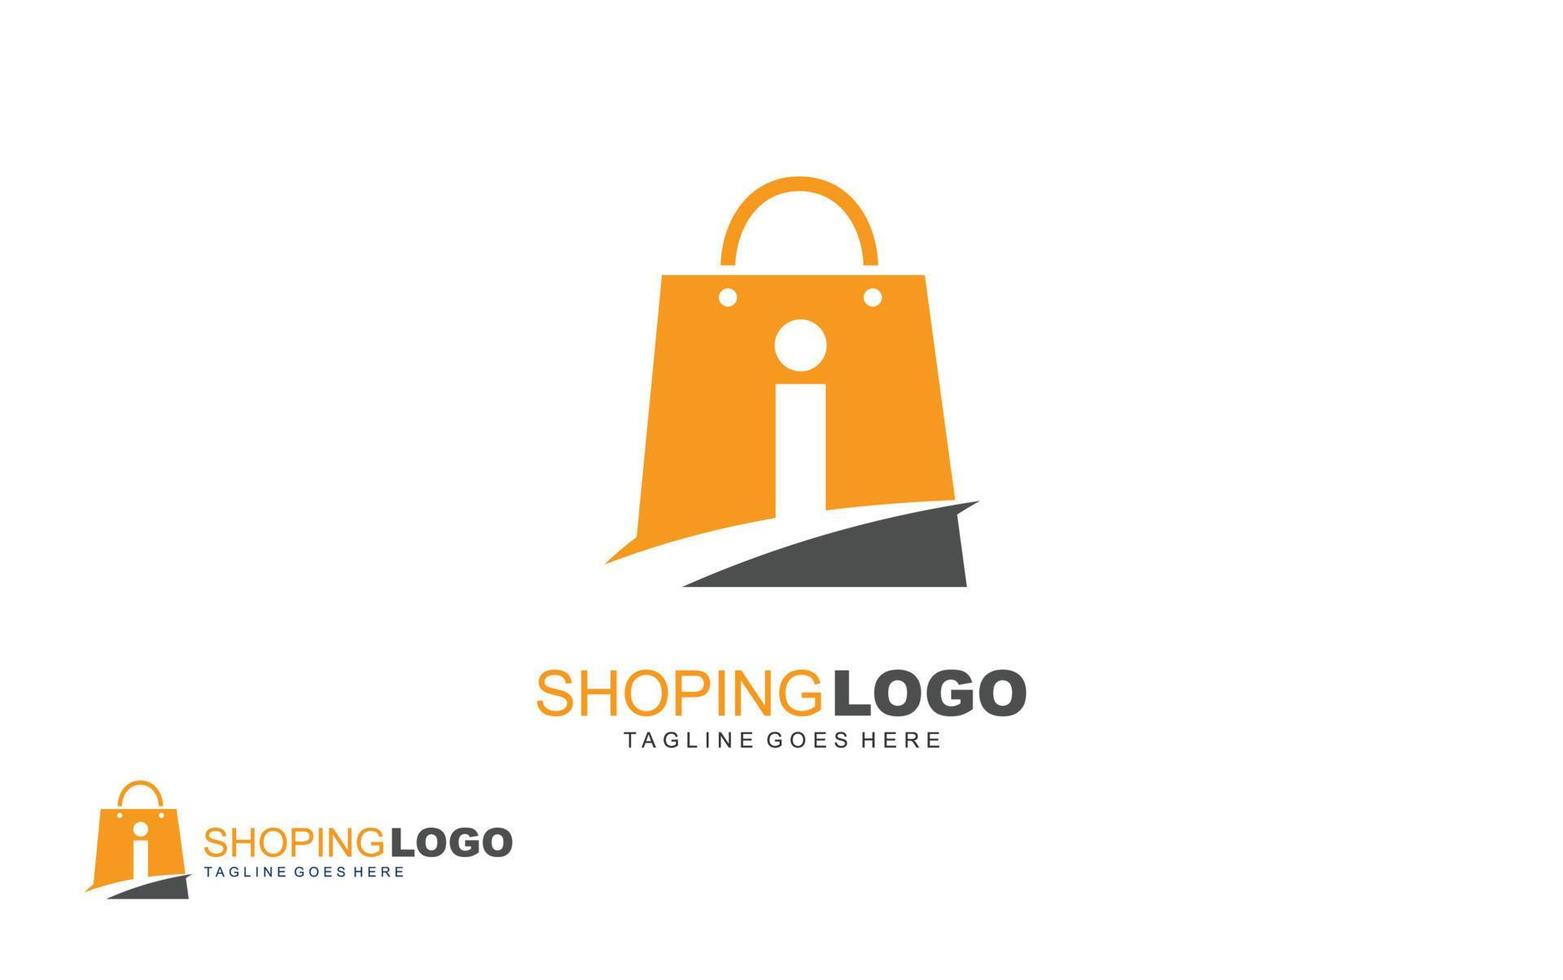 ik logo online winkel voor branding bedrijf. zak sjabloon vector illustratie voor uw merk.